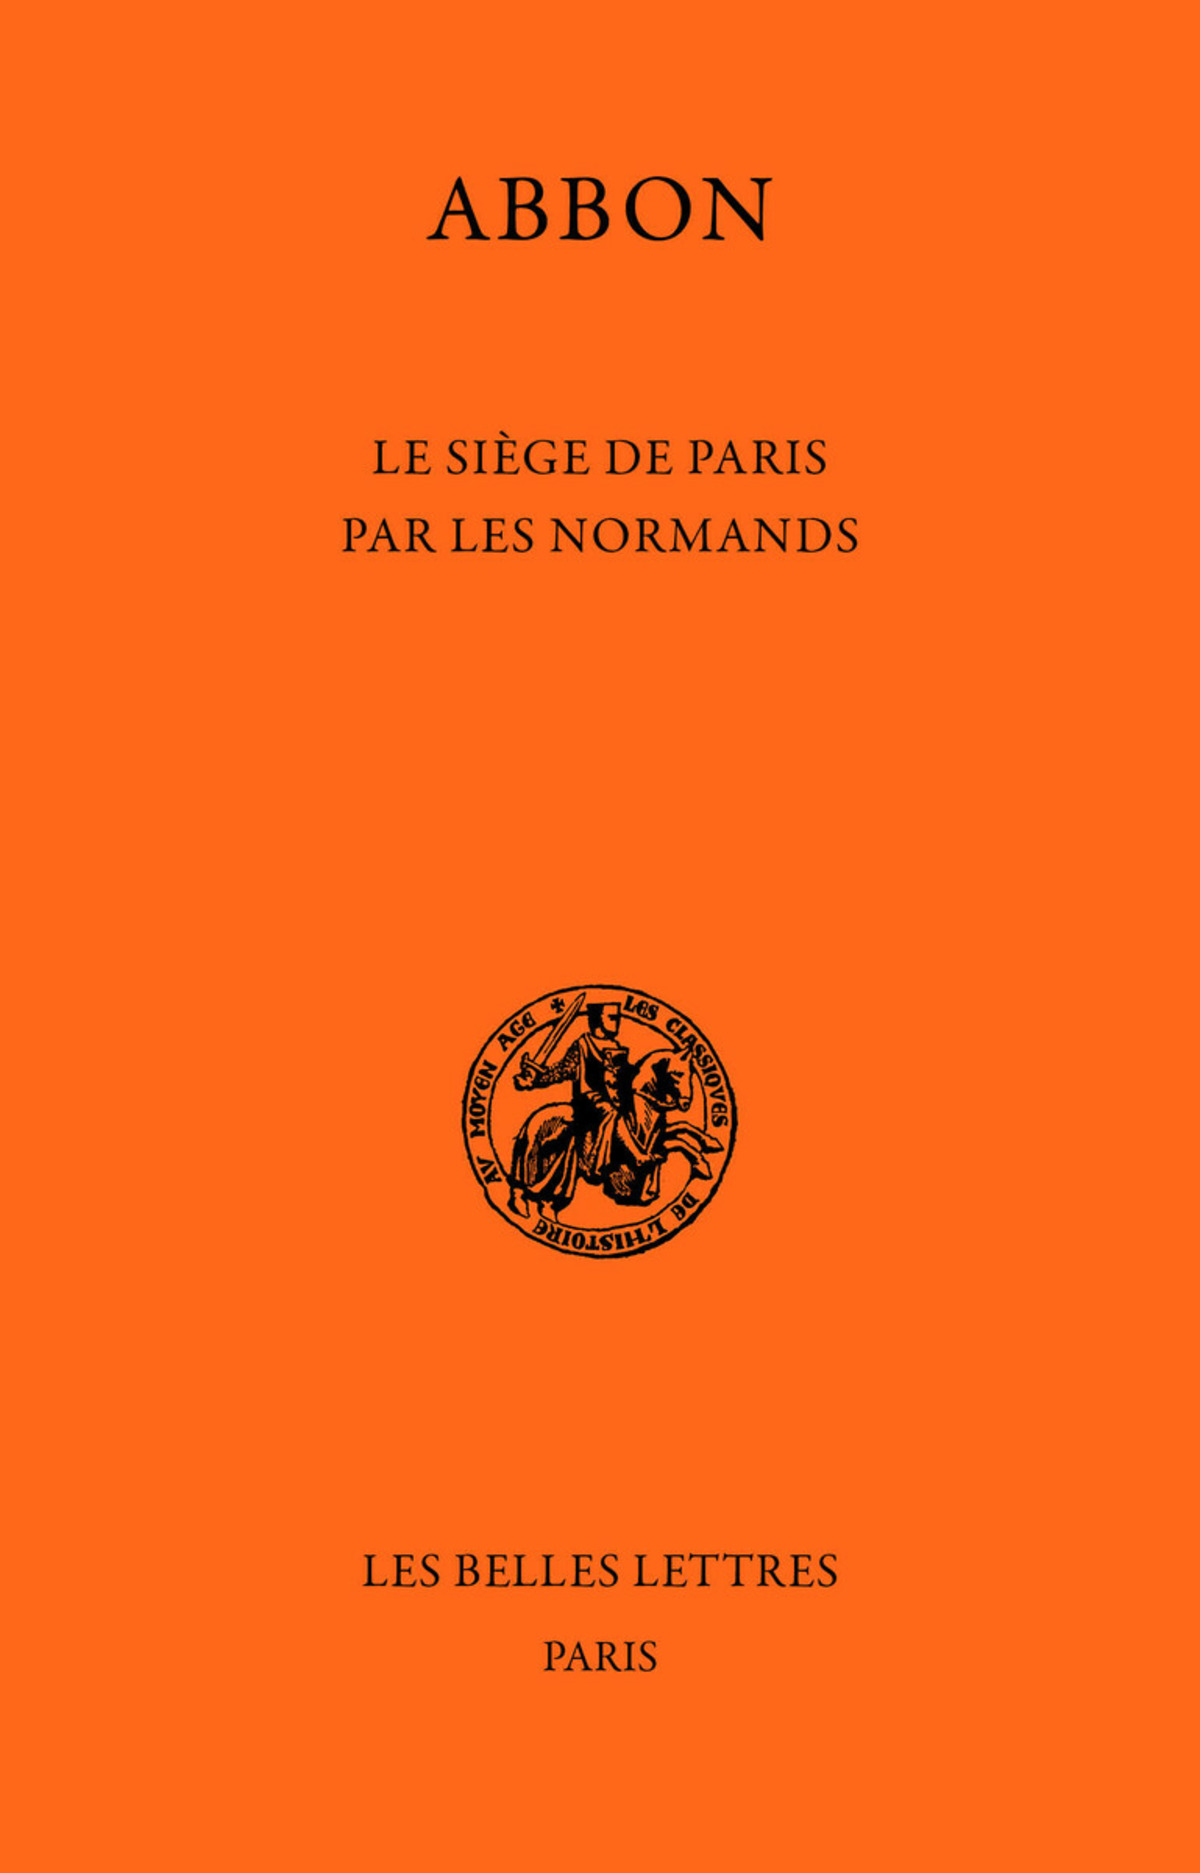 Le Siège de Paris par les Normands